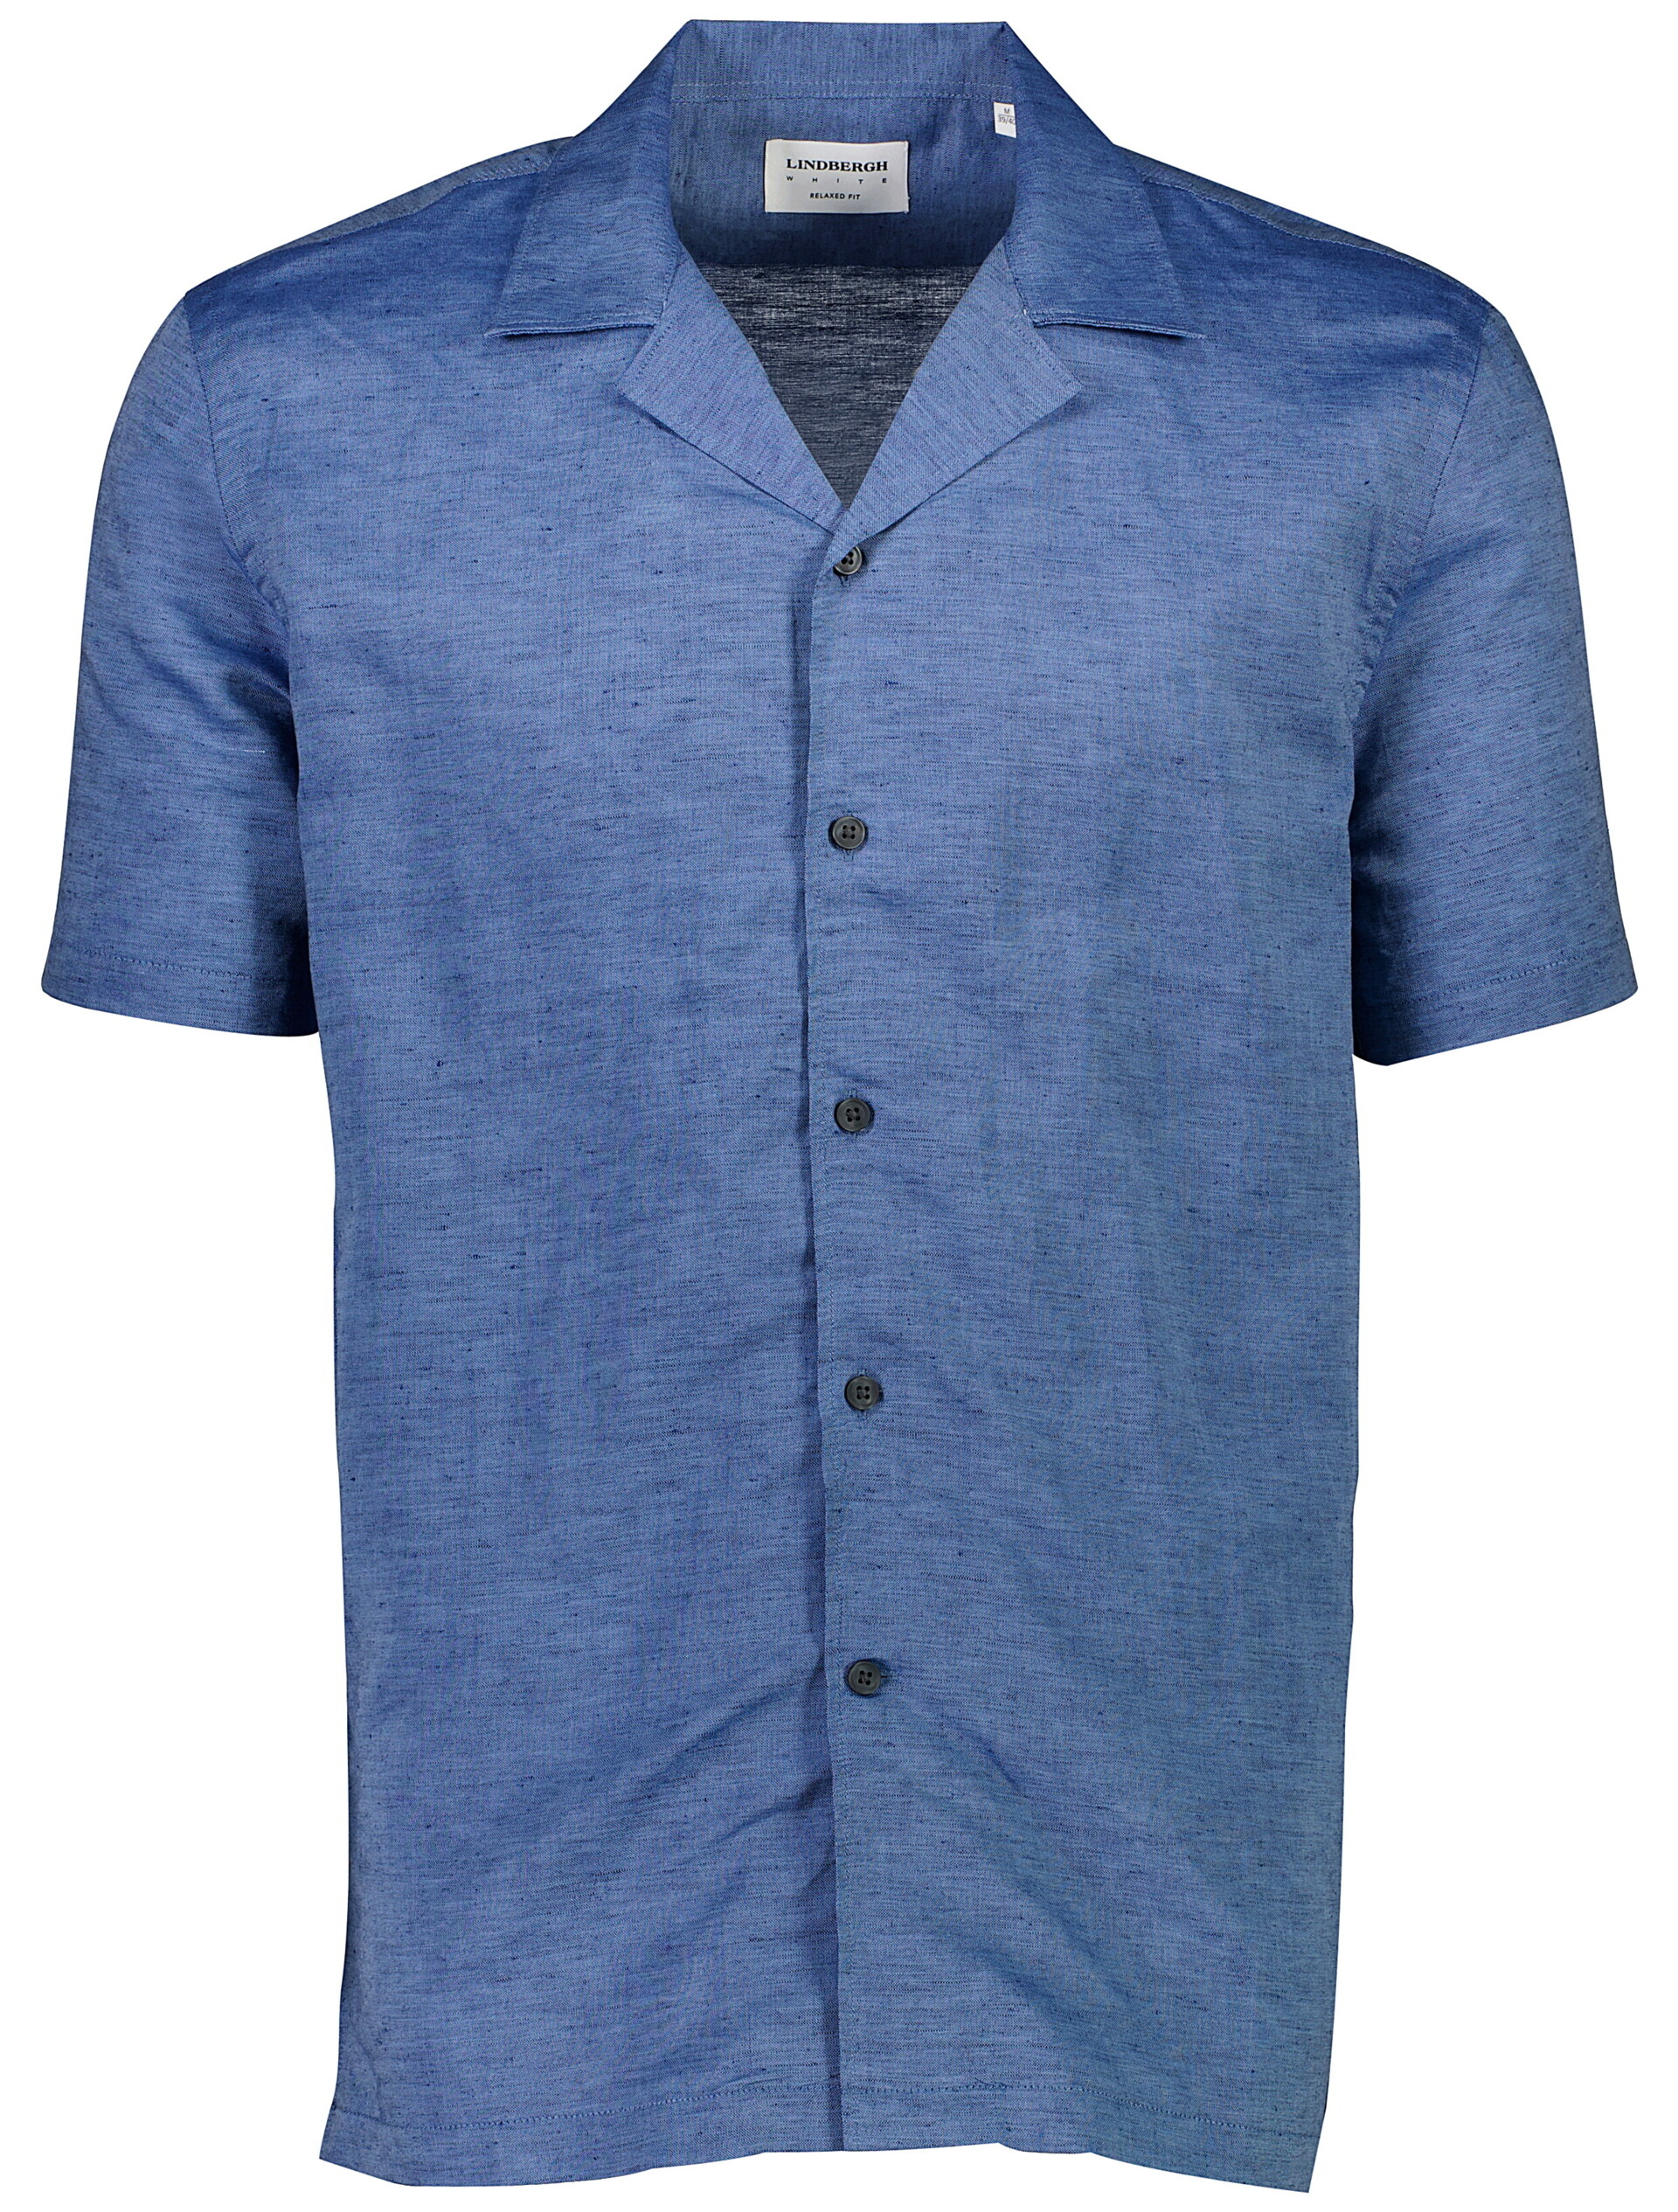 Lindbergh Linen shirt blue / dk blue